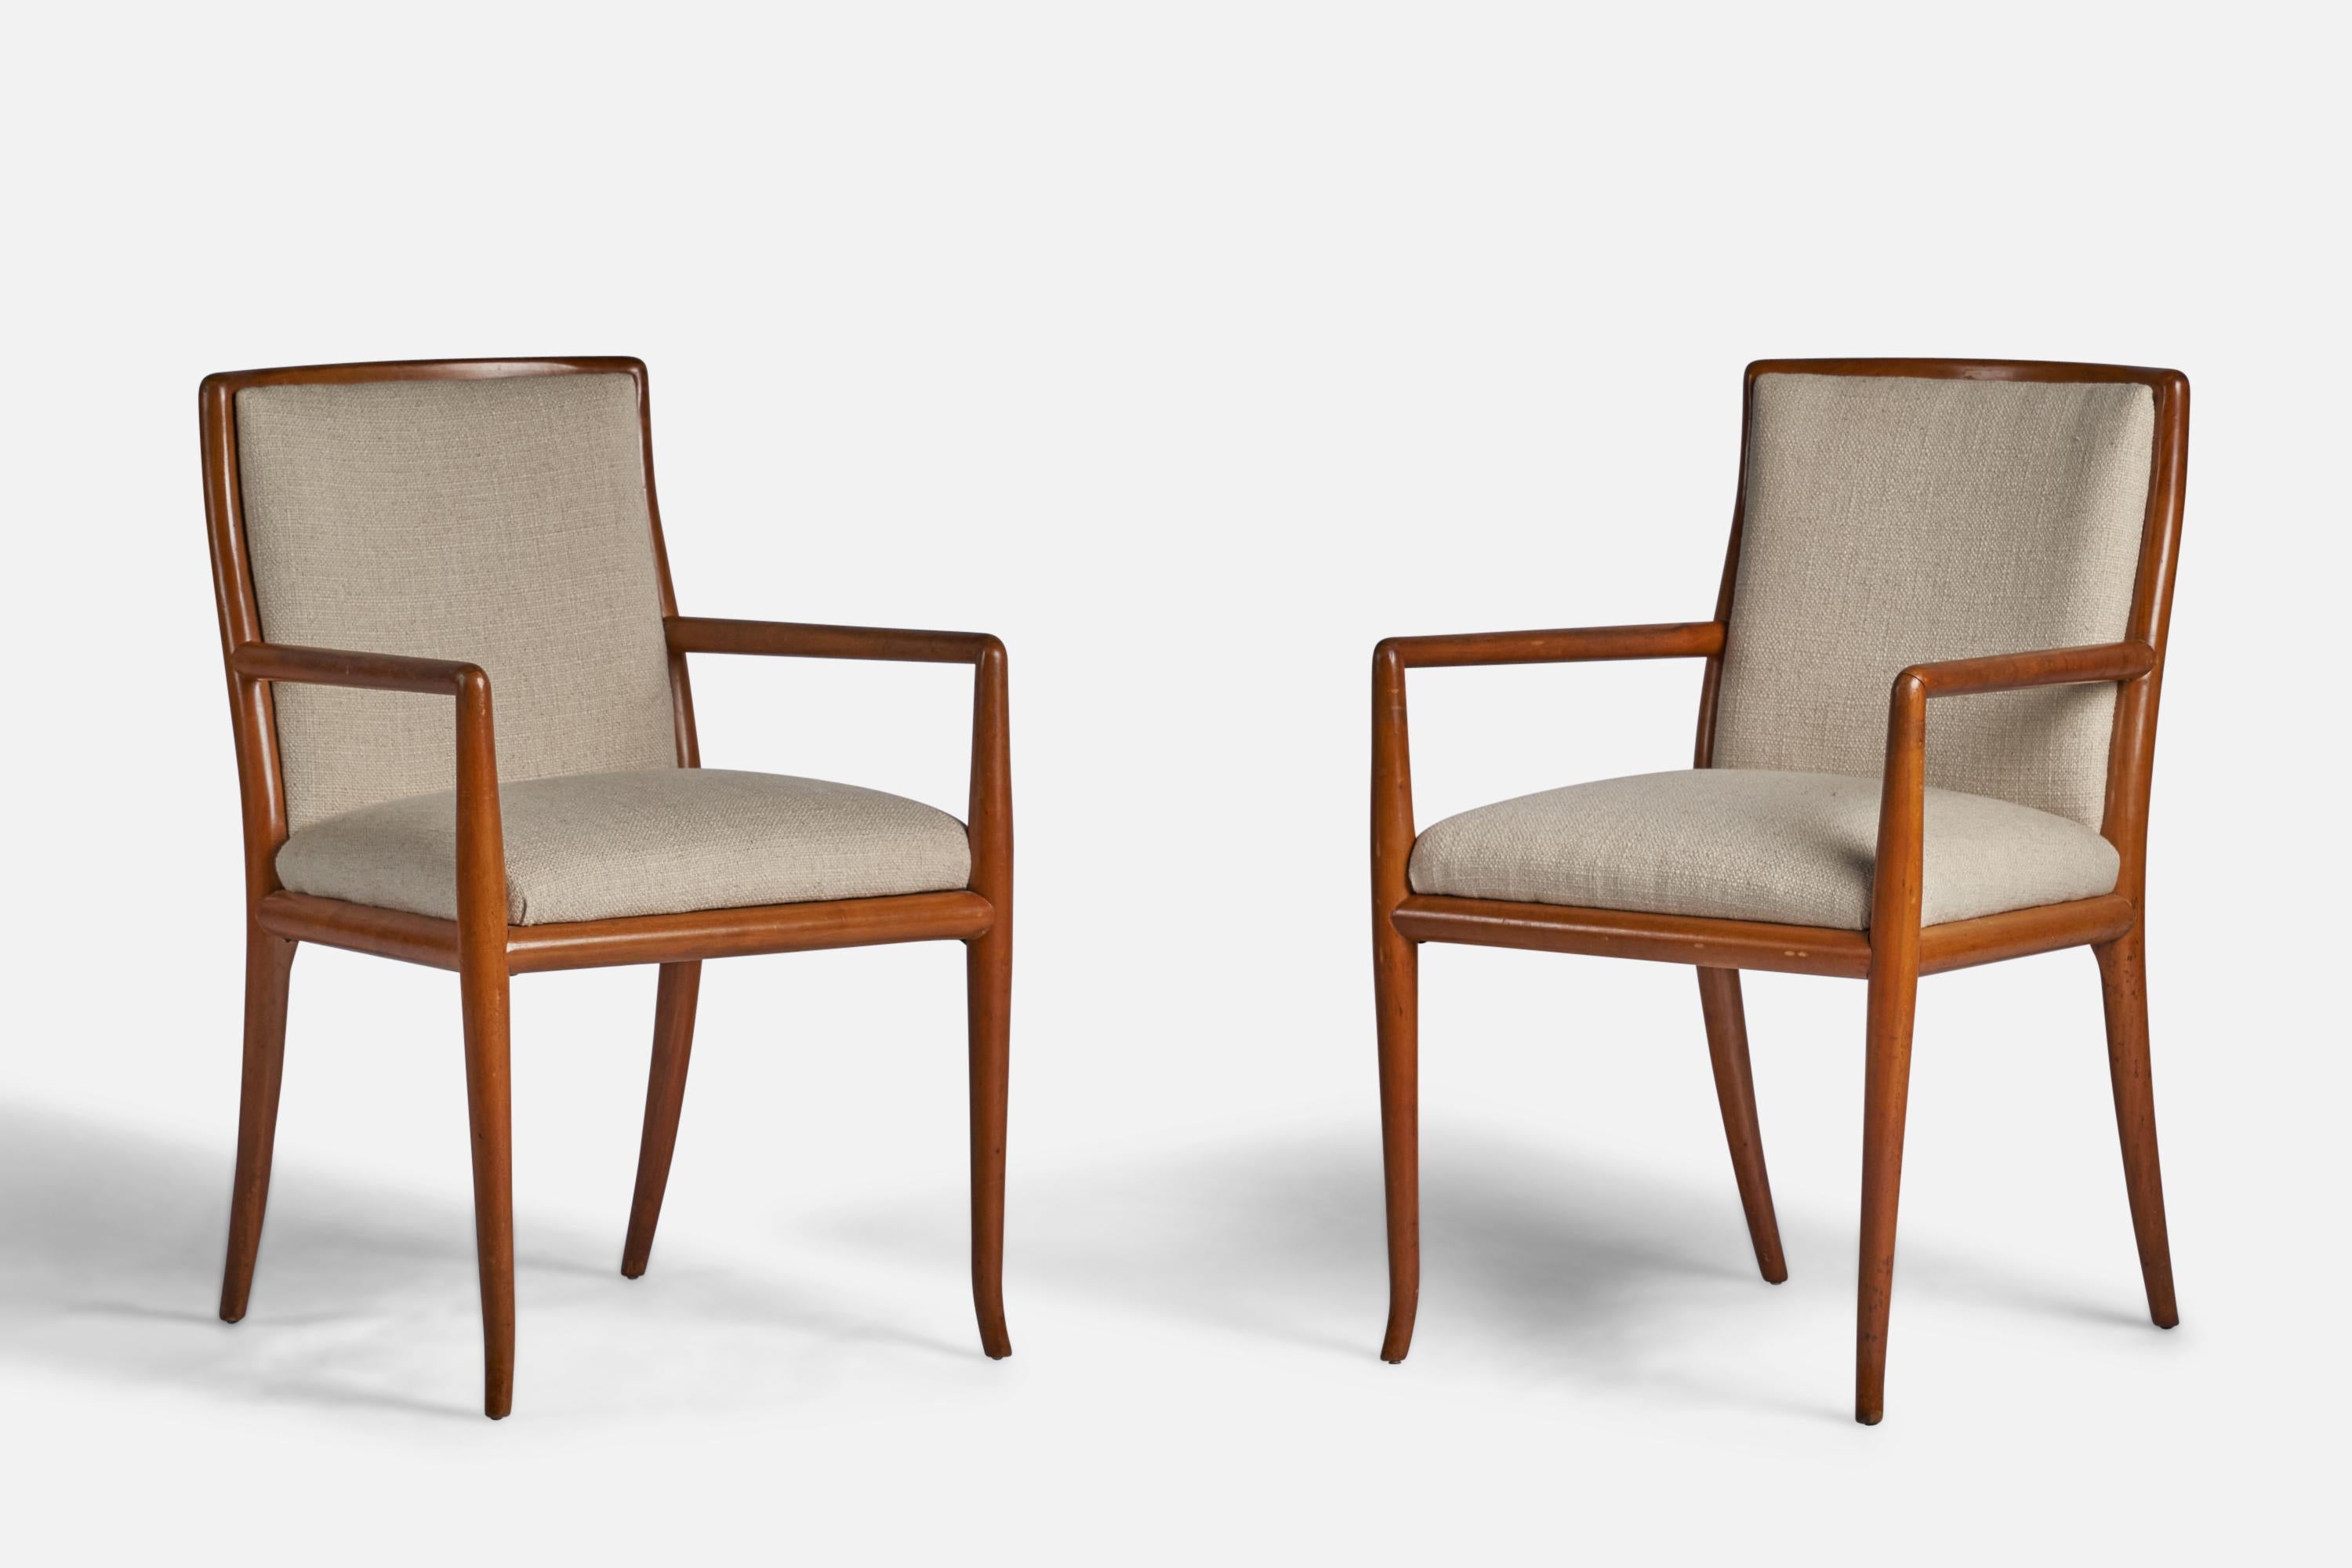 Ein Paar Sessel oder Beistellstühle aus Walnussholz und cremefarbenem Stoff, entworfen von T.H. Robsjohn-Gibbings und produziert von Widdicomb, Grand Rapids, Michigan, USA, 1950er Jahre.
20